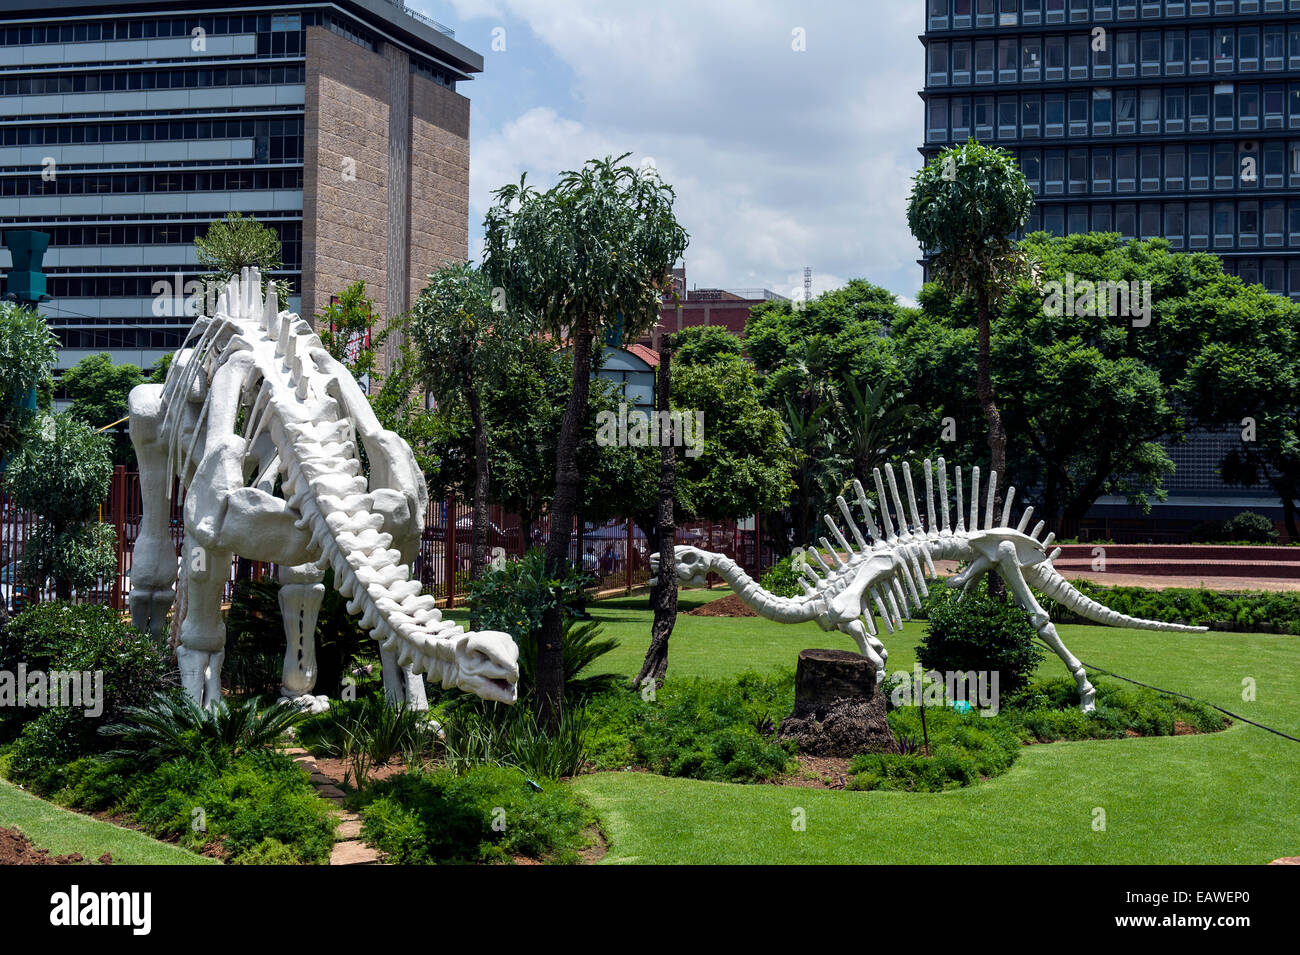 Esqueletos de dinosaurios saludar a los visitantes del Museo de Historia Natural. Foto de stock